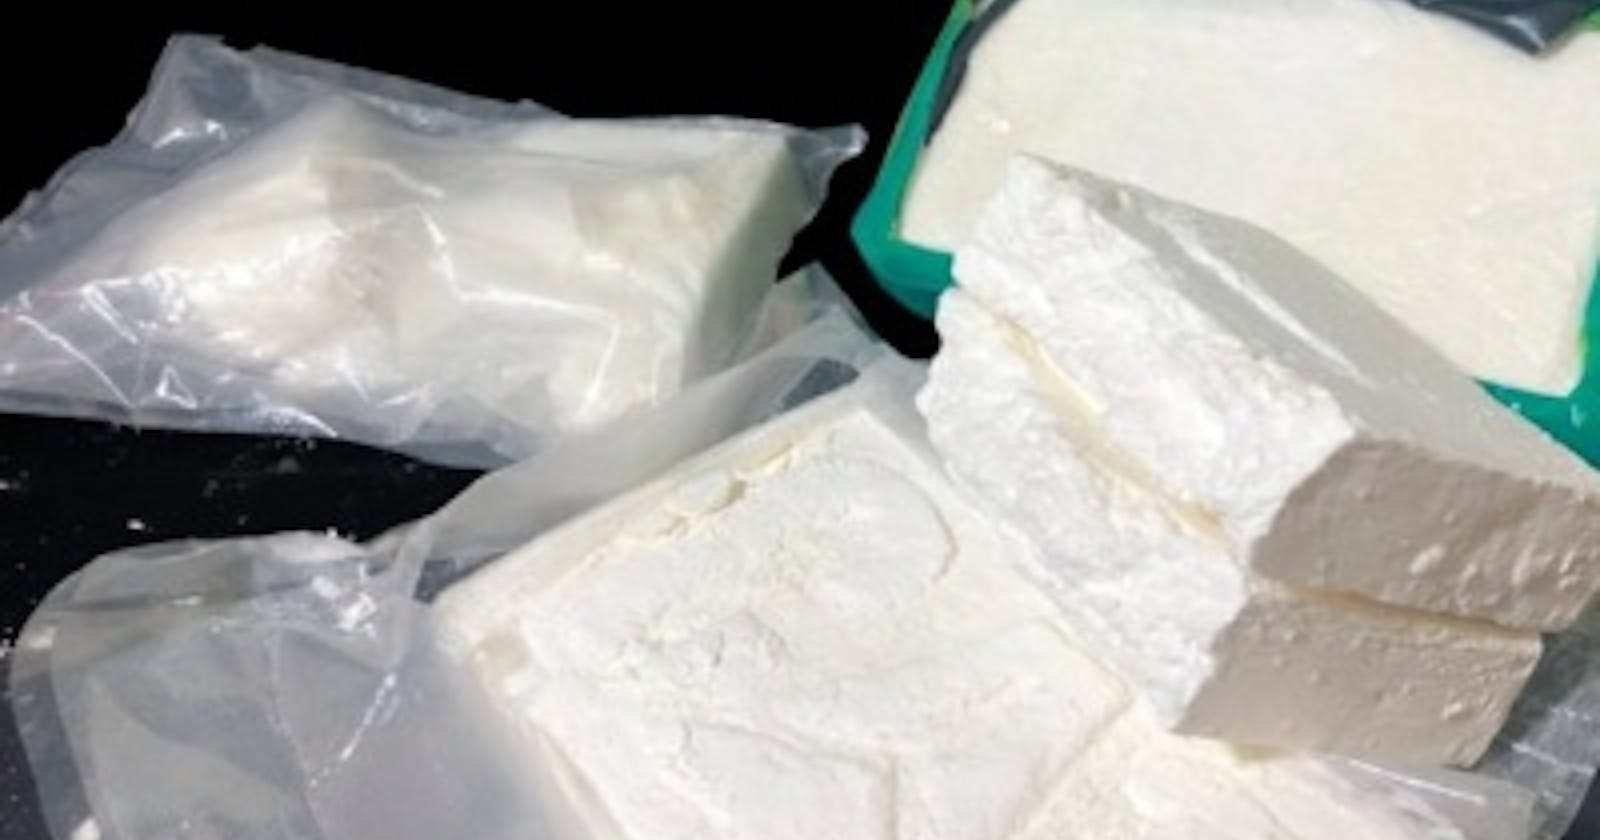 Buy Crack Cocaine Online, Buy Furanylfentanyl Online